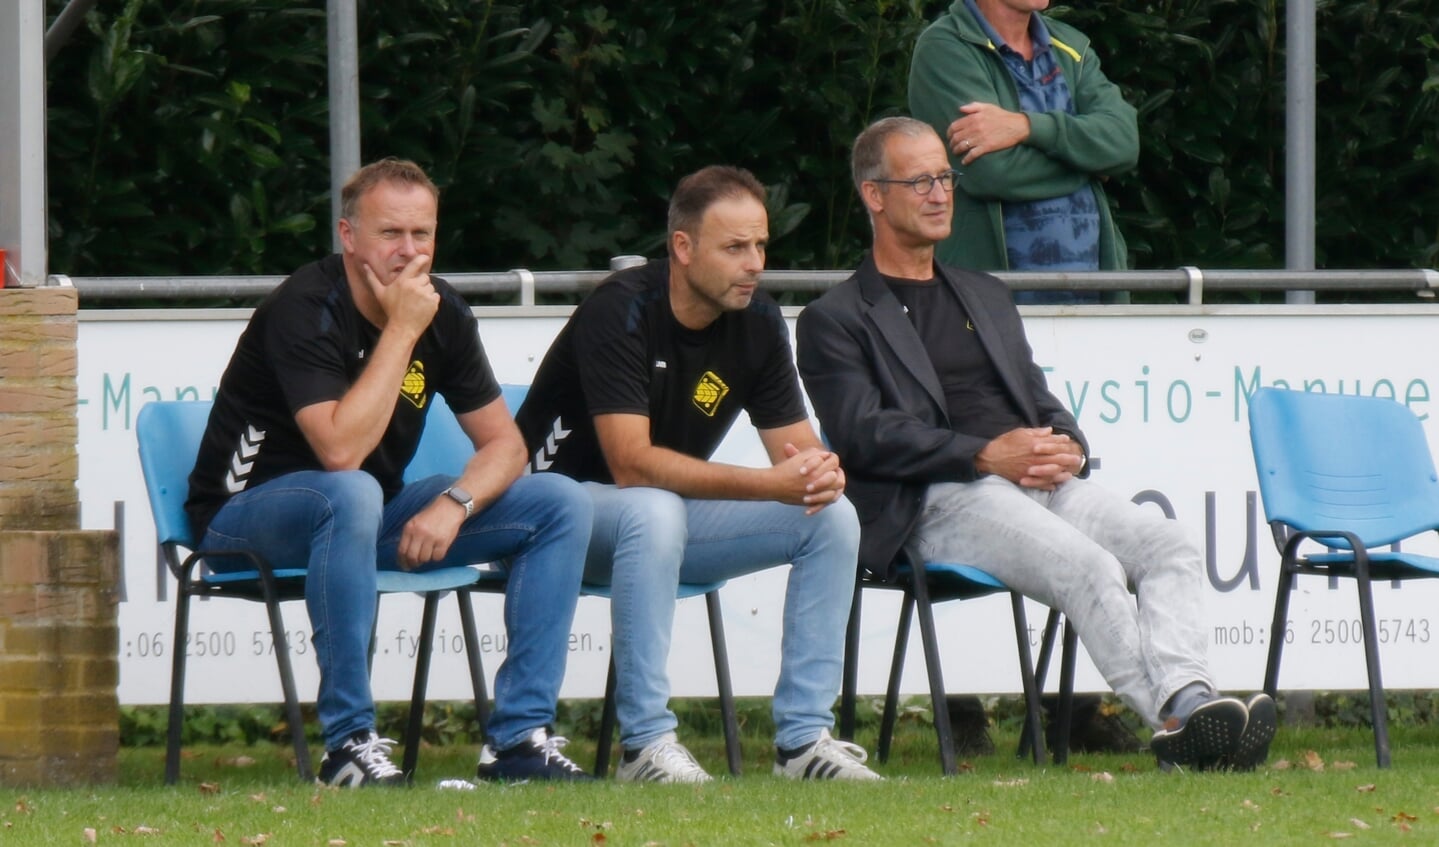 SSS'18-coach Michel Kuijpers (midden): 'Ik ben trots op deze ploeg.'